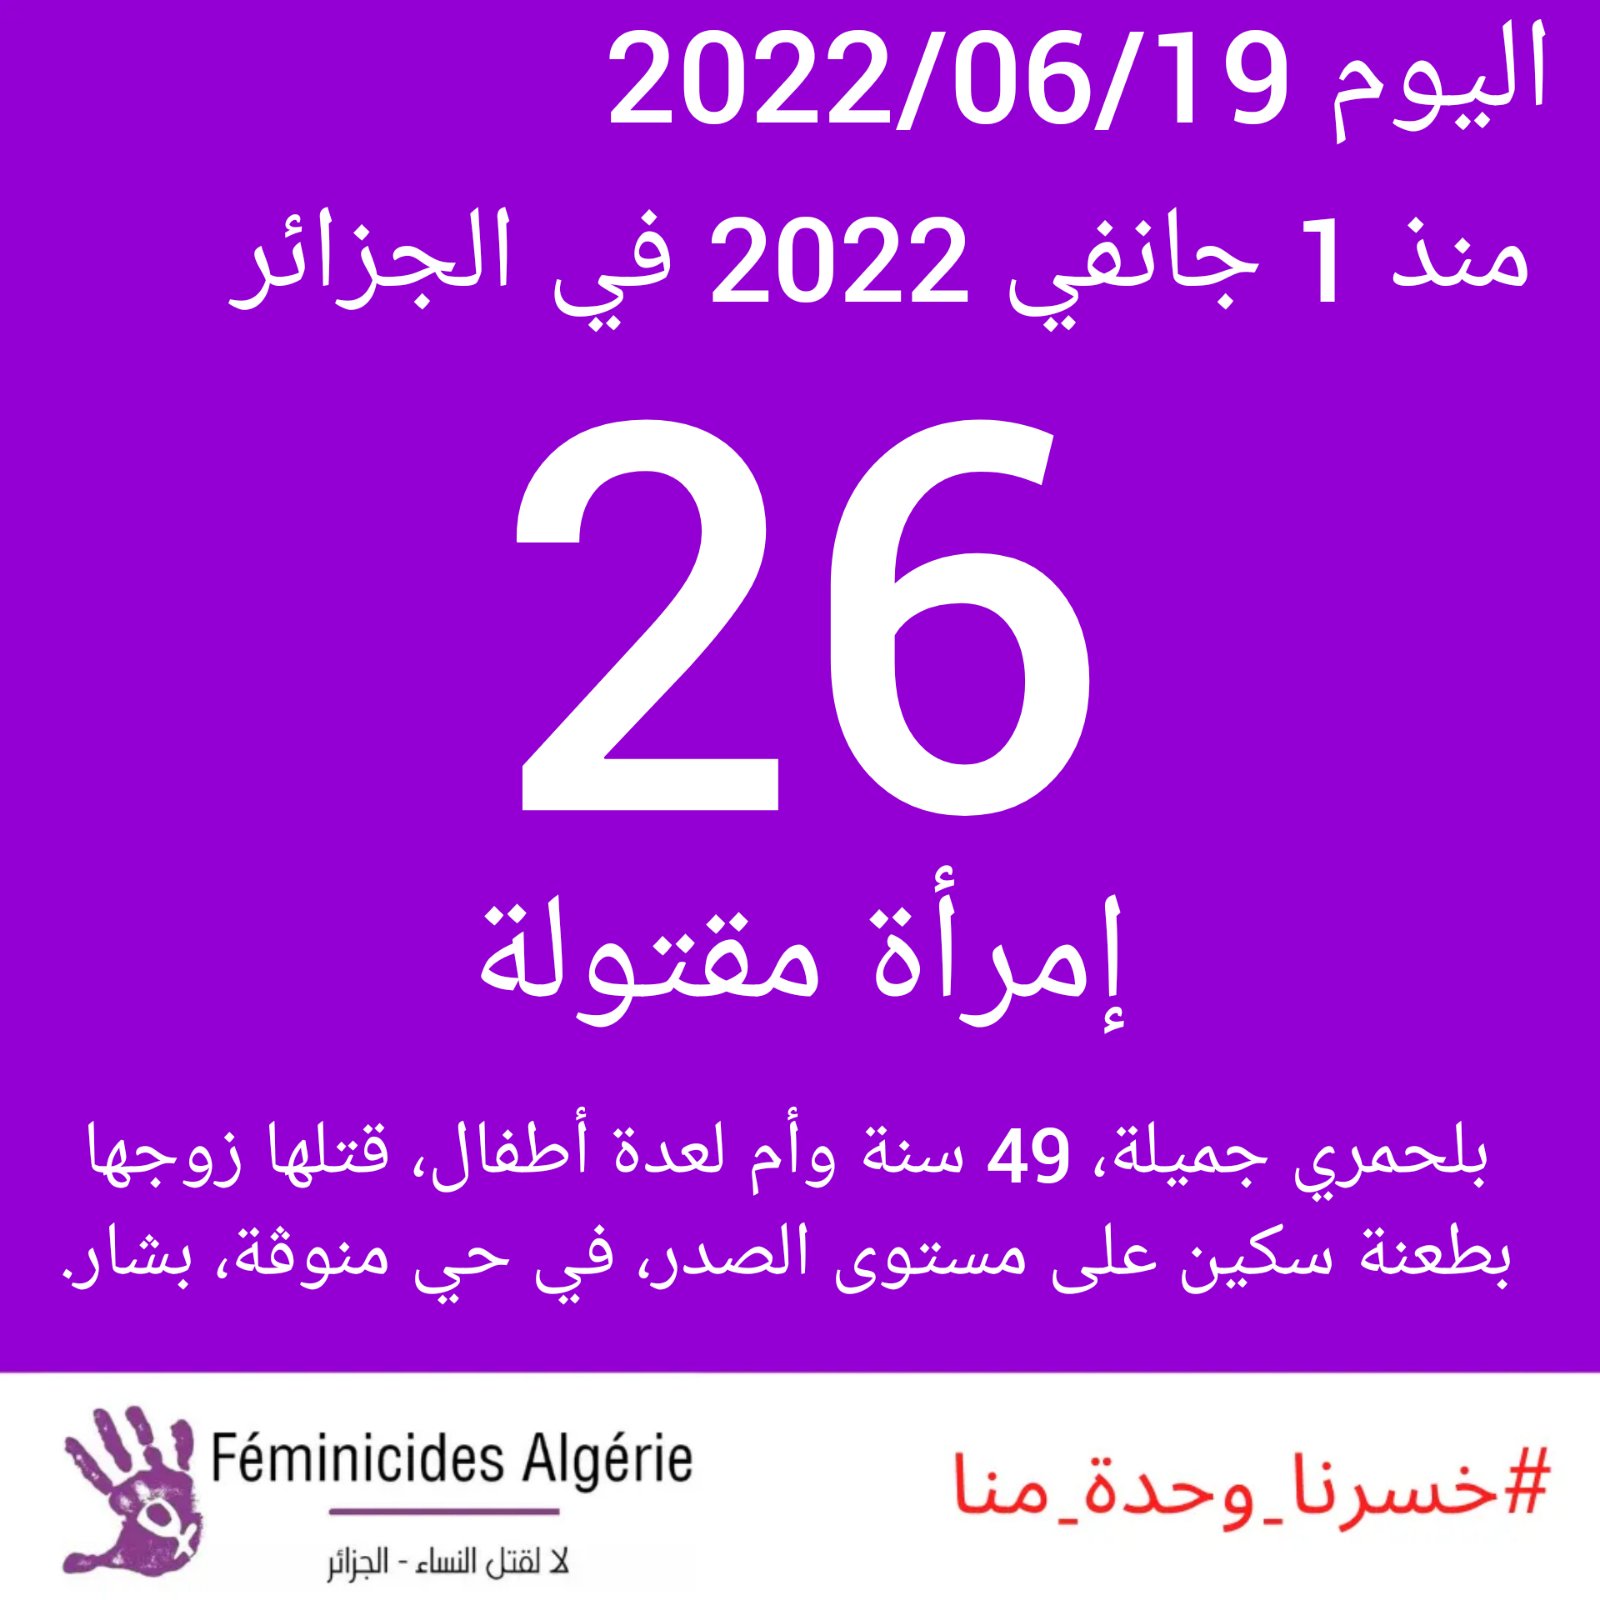 Féminicides en Algérie